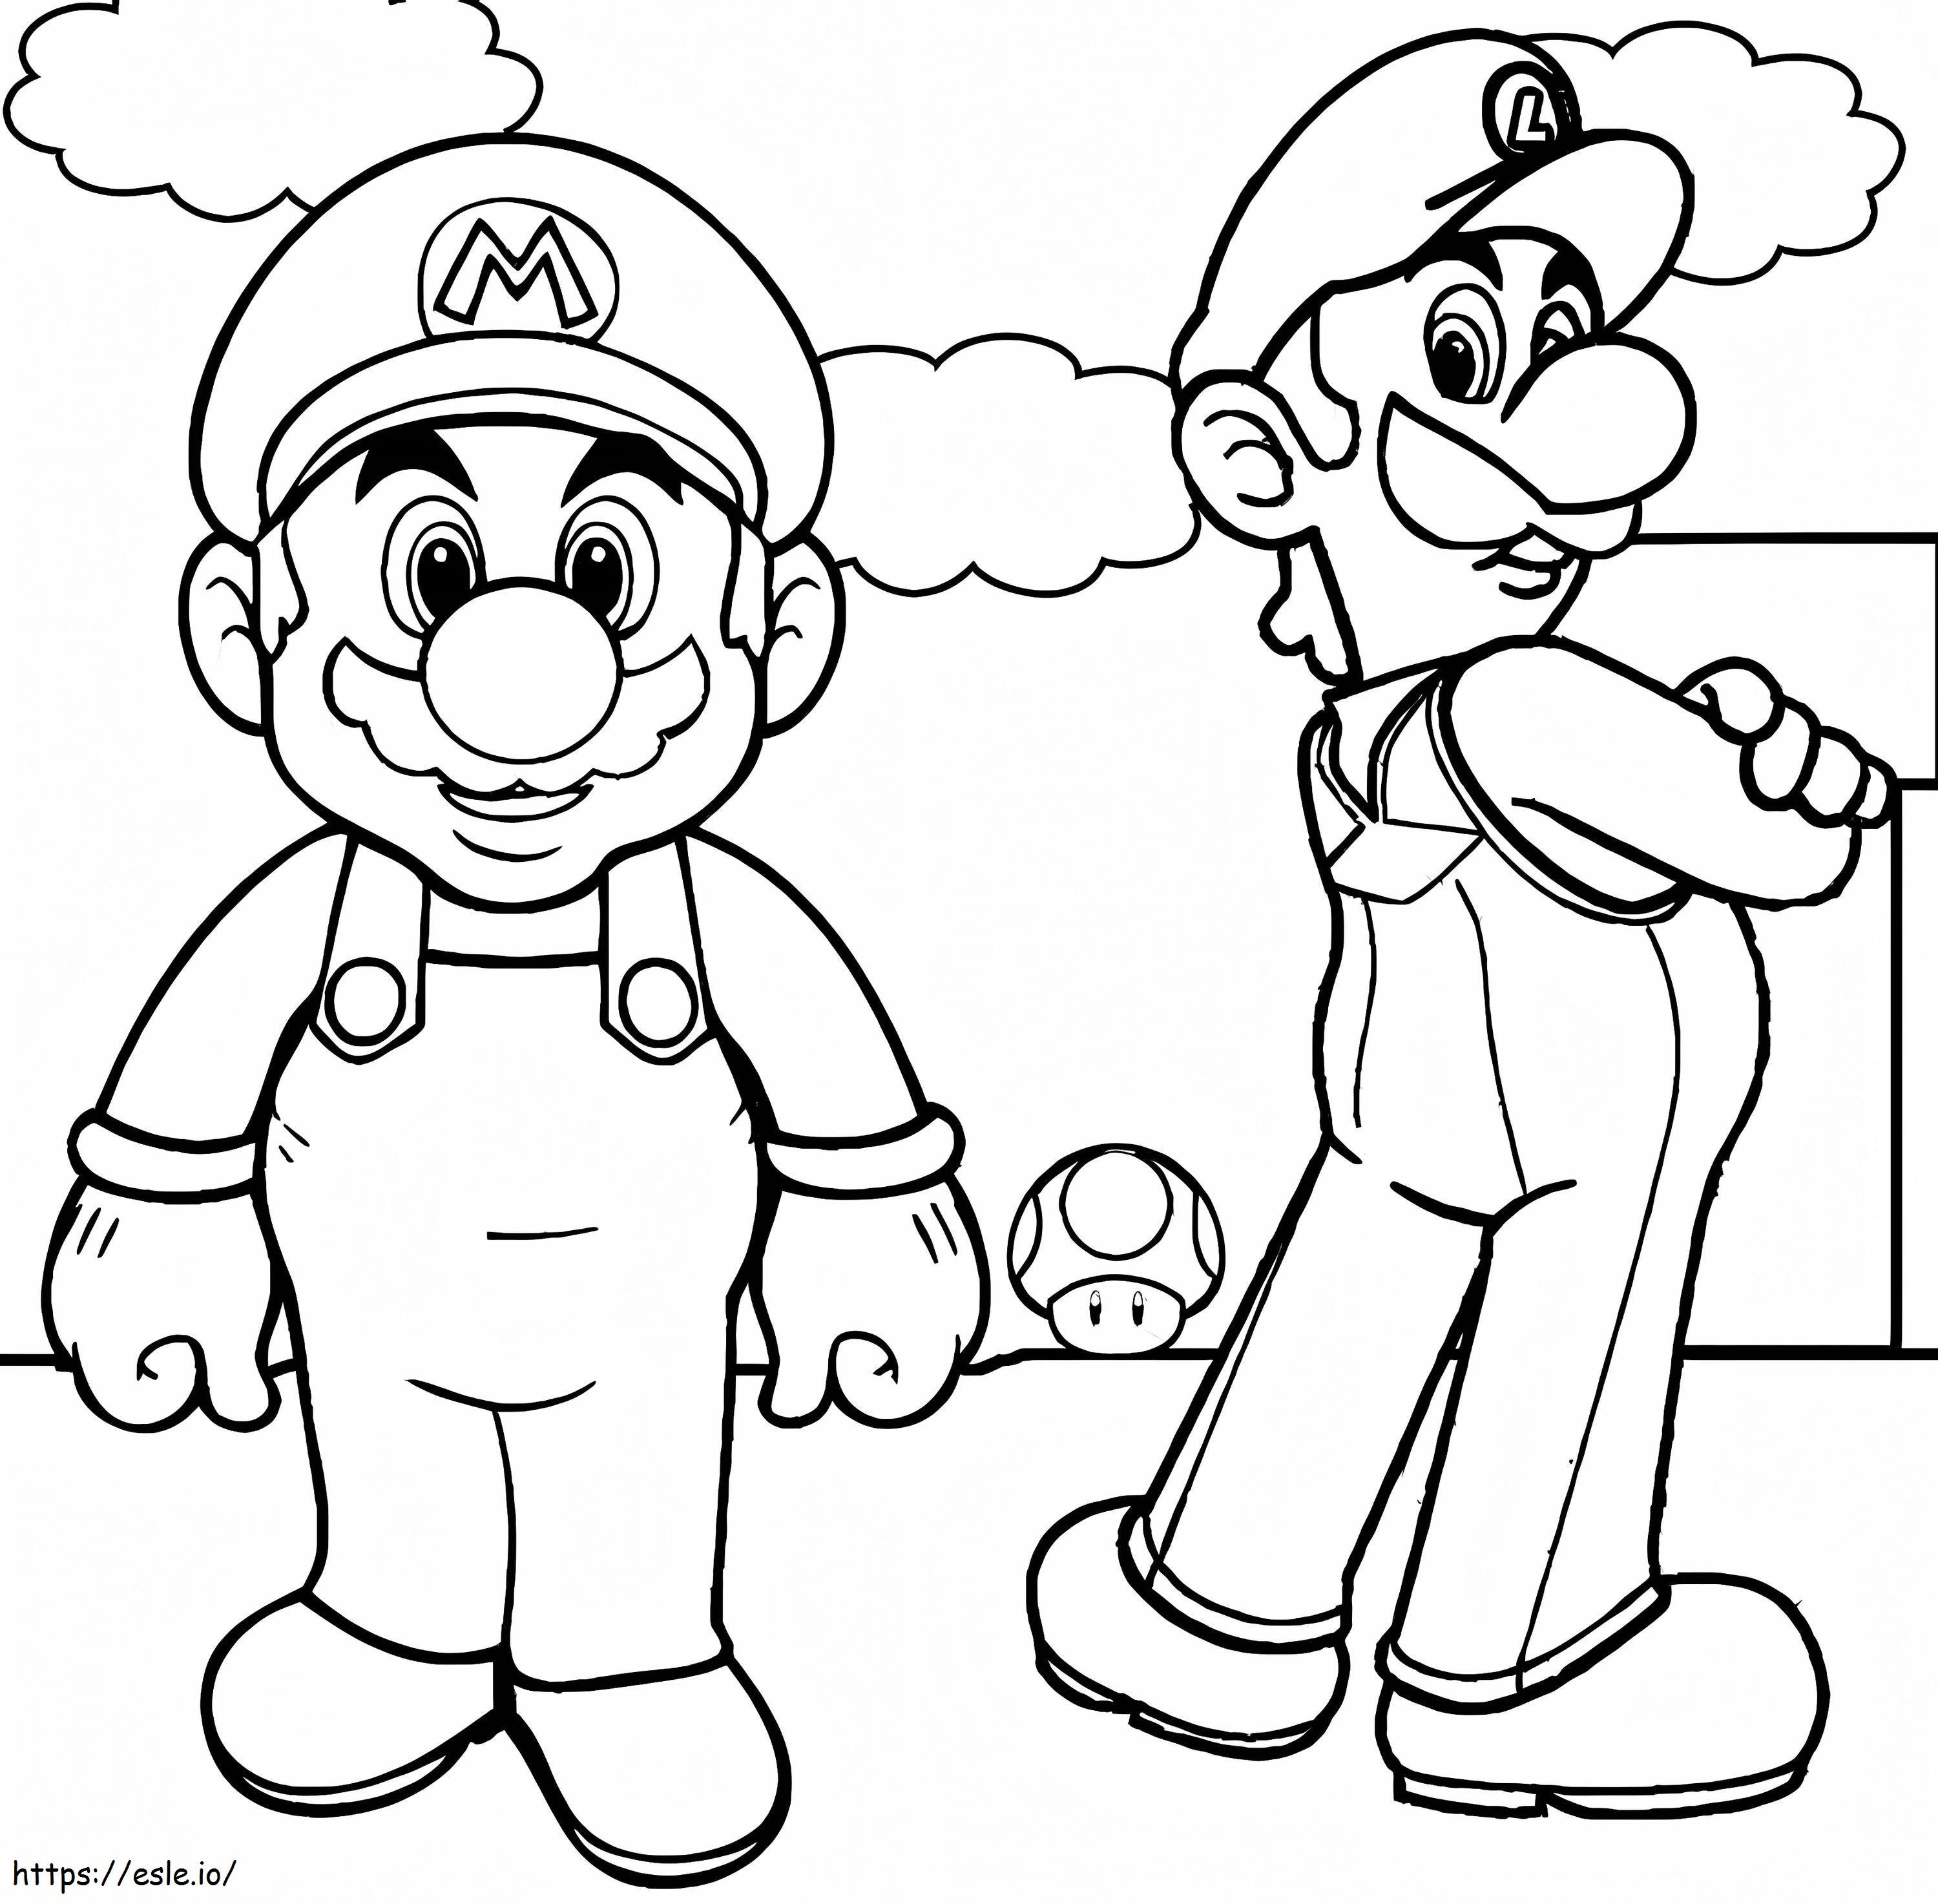 Luigi Basico en Mario kleurplaat kleurplaat